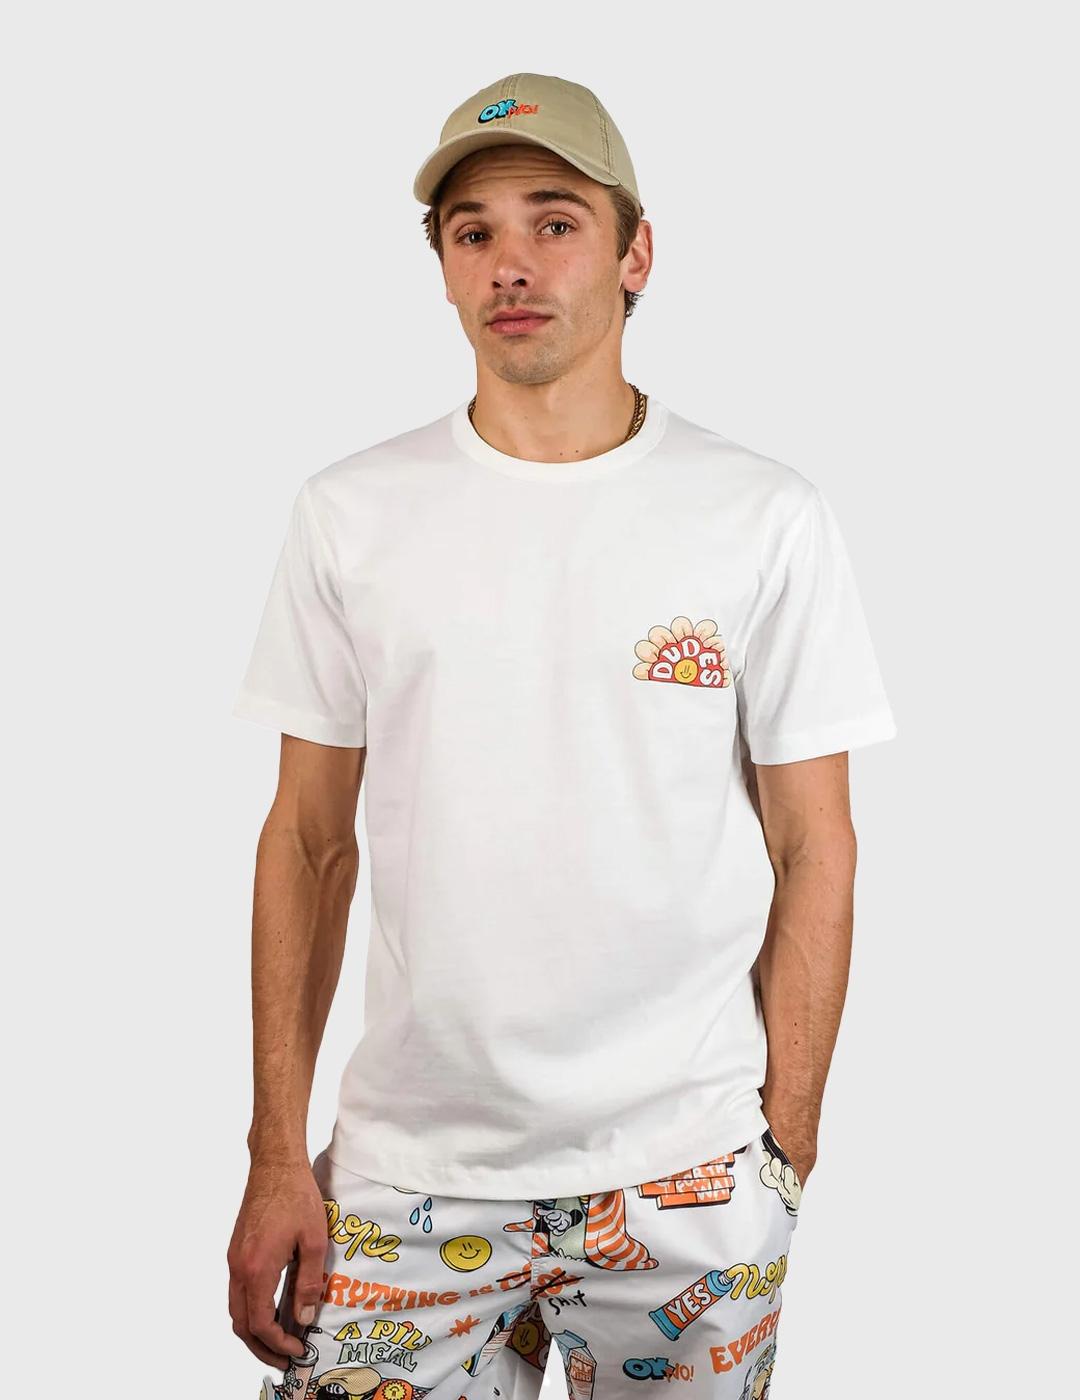 The Dudes Mid Summer Premium Camiseta blanca para hombre